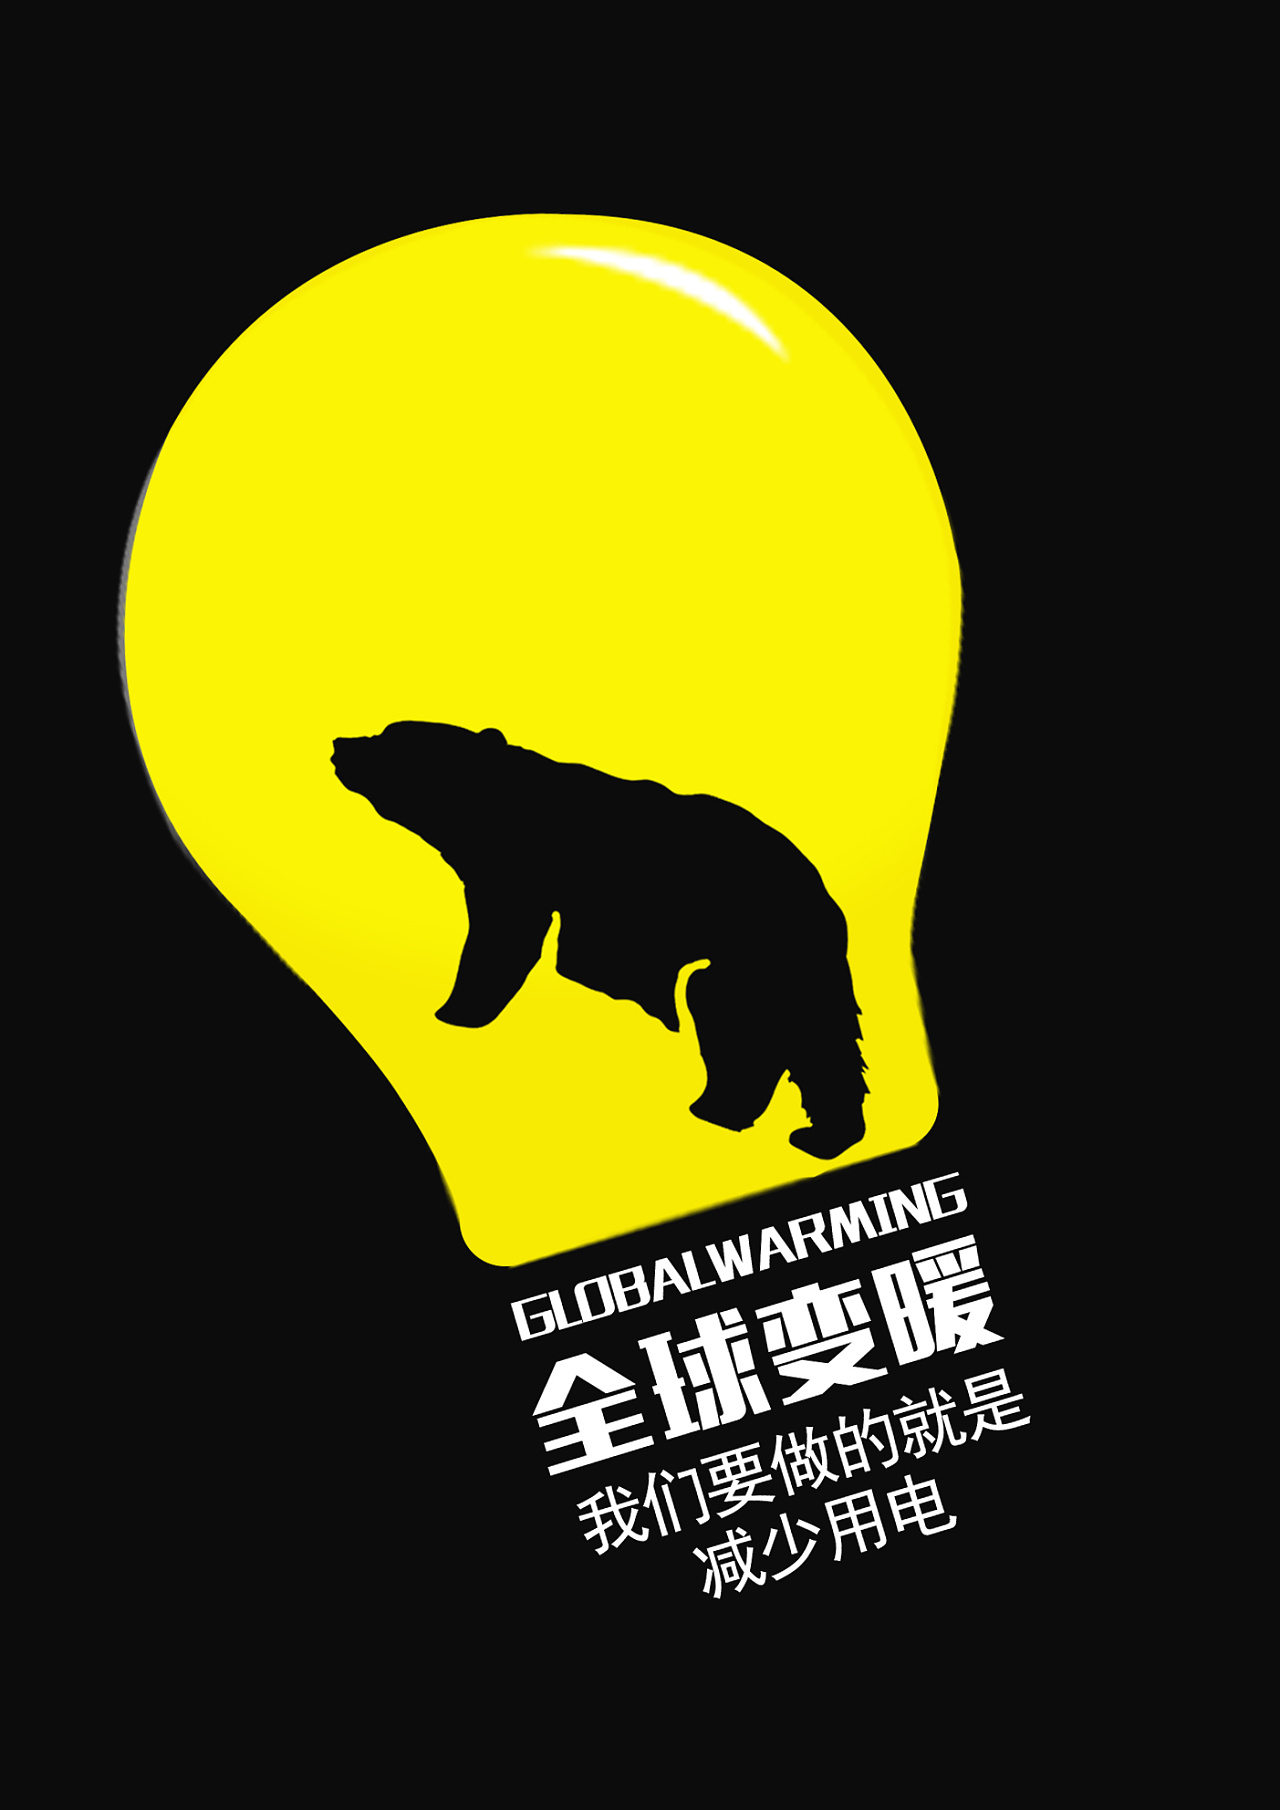 对环保类的海报总是把握不好,多尝试应该会好点北京